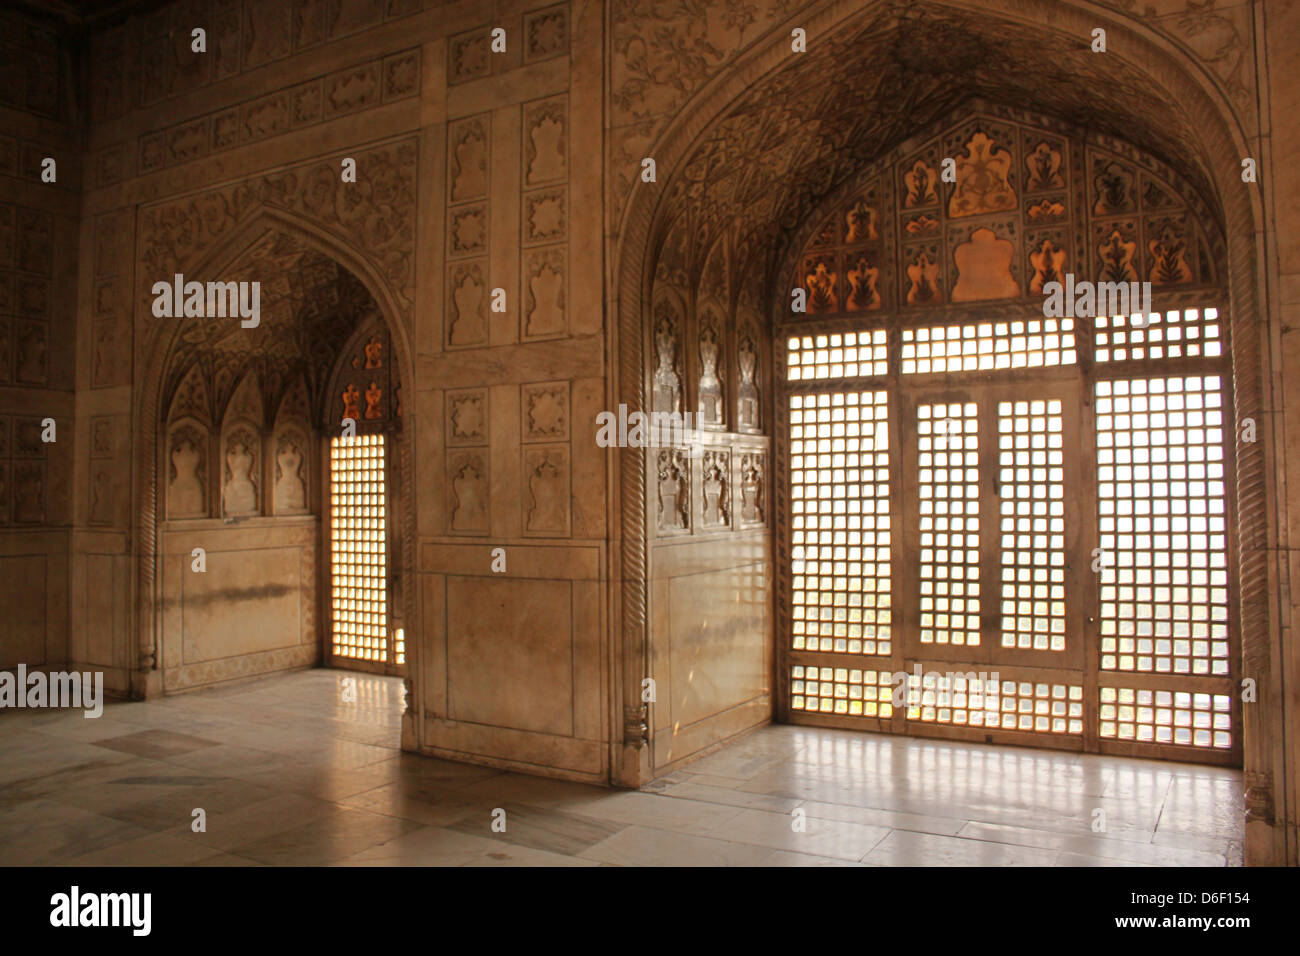 Verzierten Innenräume der Agra Fort UNESCO World Heritage Site Agra, Uttar Pradesh, Indien Stockfoto